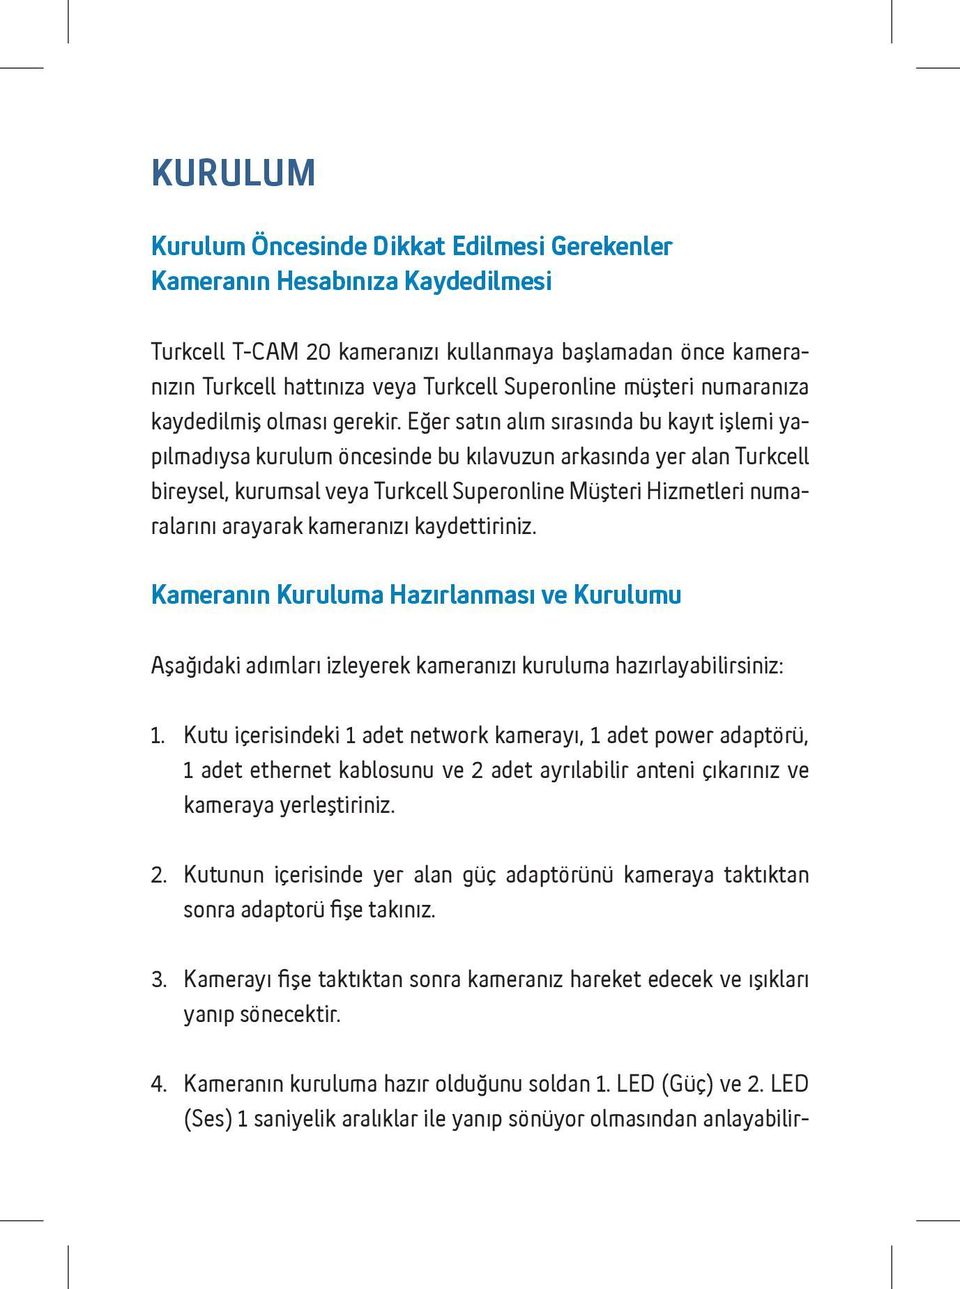 Eğer satın alım sırasında bu kayıt işlemi yapılmadıysa kurulum öncesinde bu kılavuzun arkasında yer alan Turkcell bireysel, kurumsal veya Turkcell Superonline Müşteri Hizmetleri numaralarını arayarak